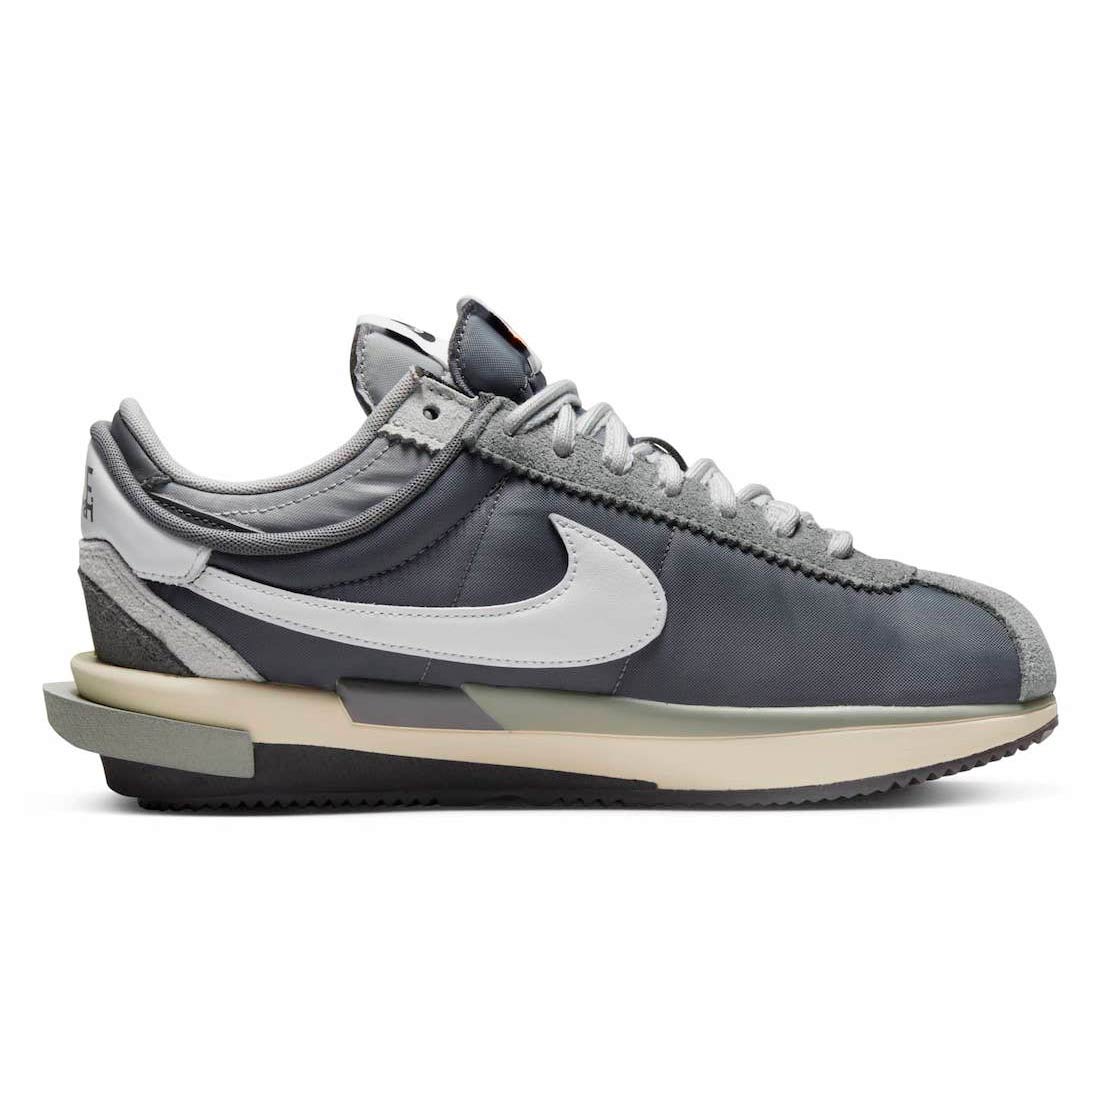 Sacai x Nike Cortez 4.0 “Grey” DQ0581-001